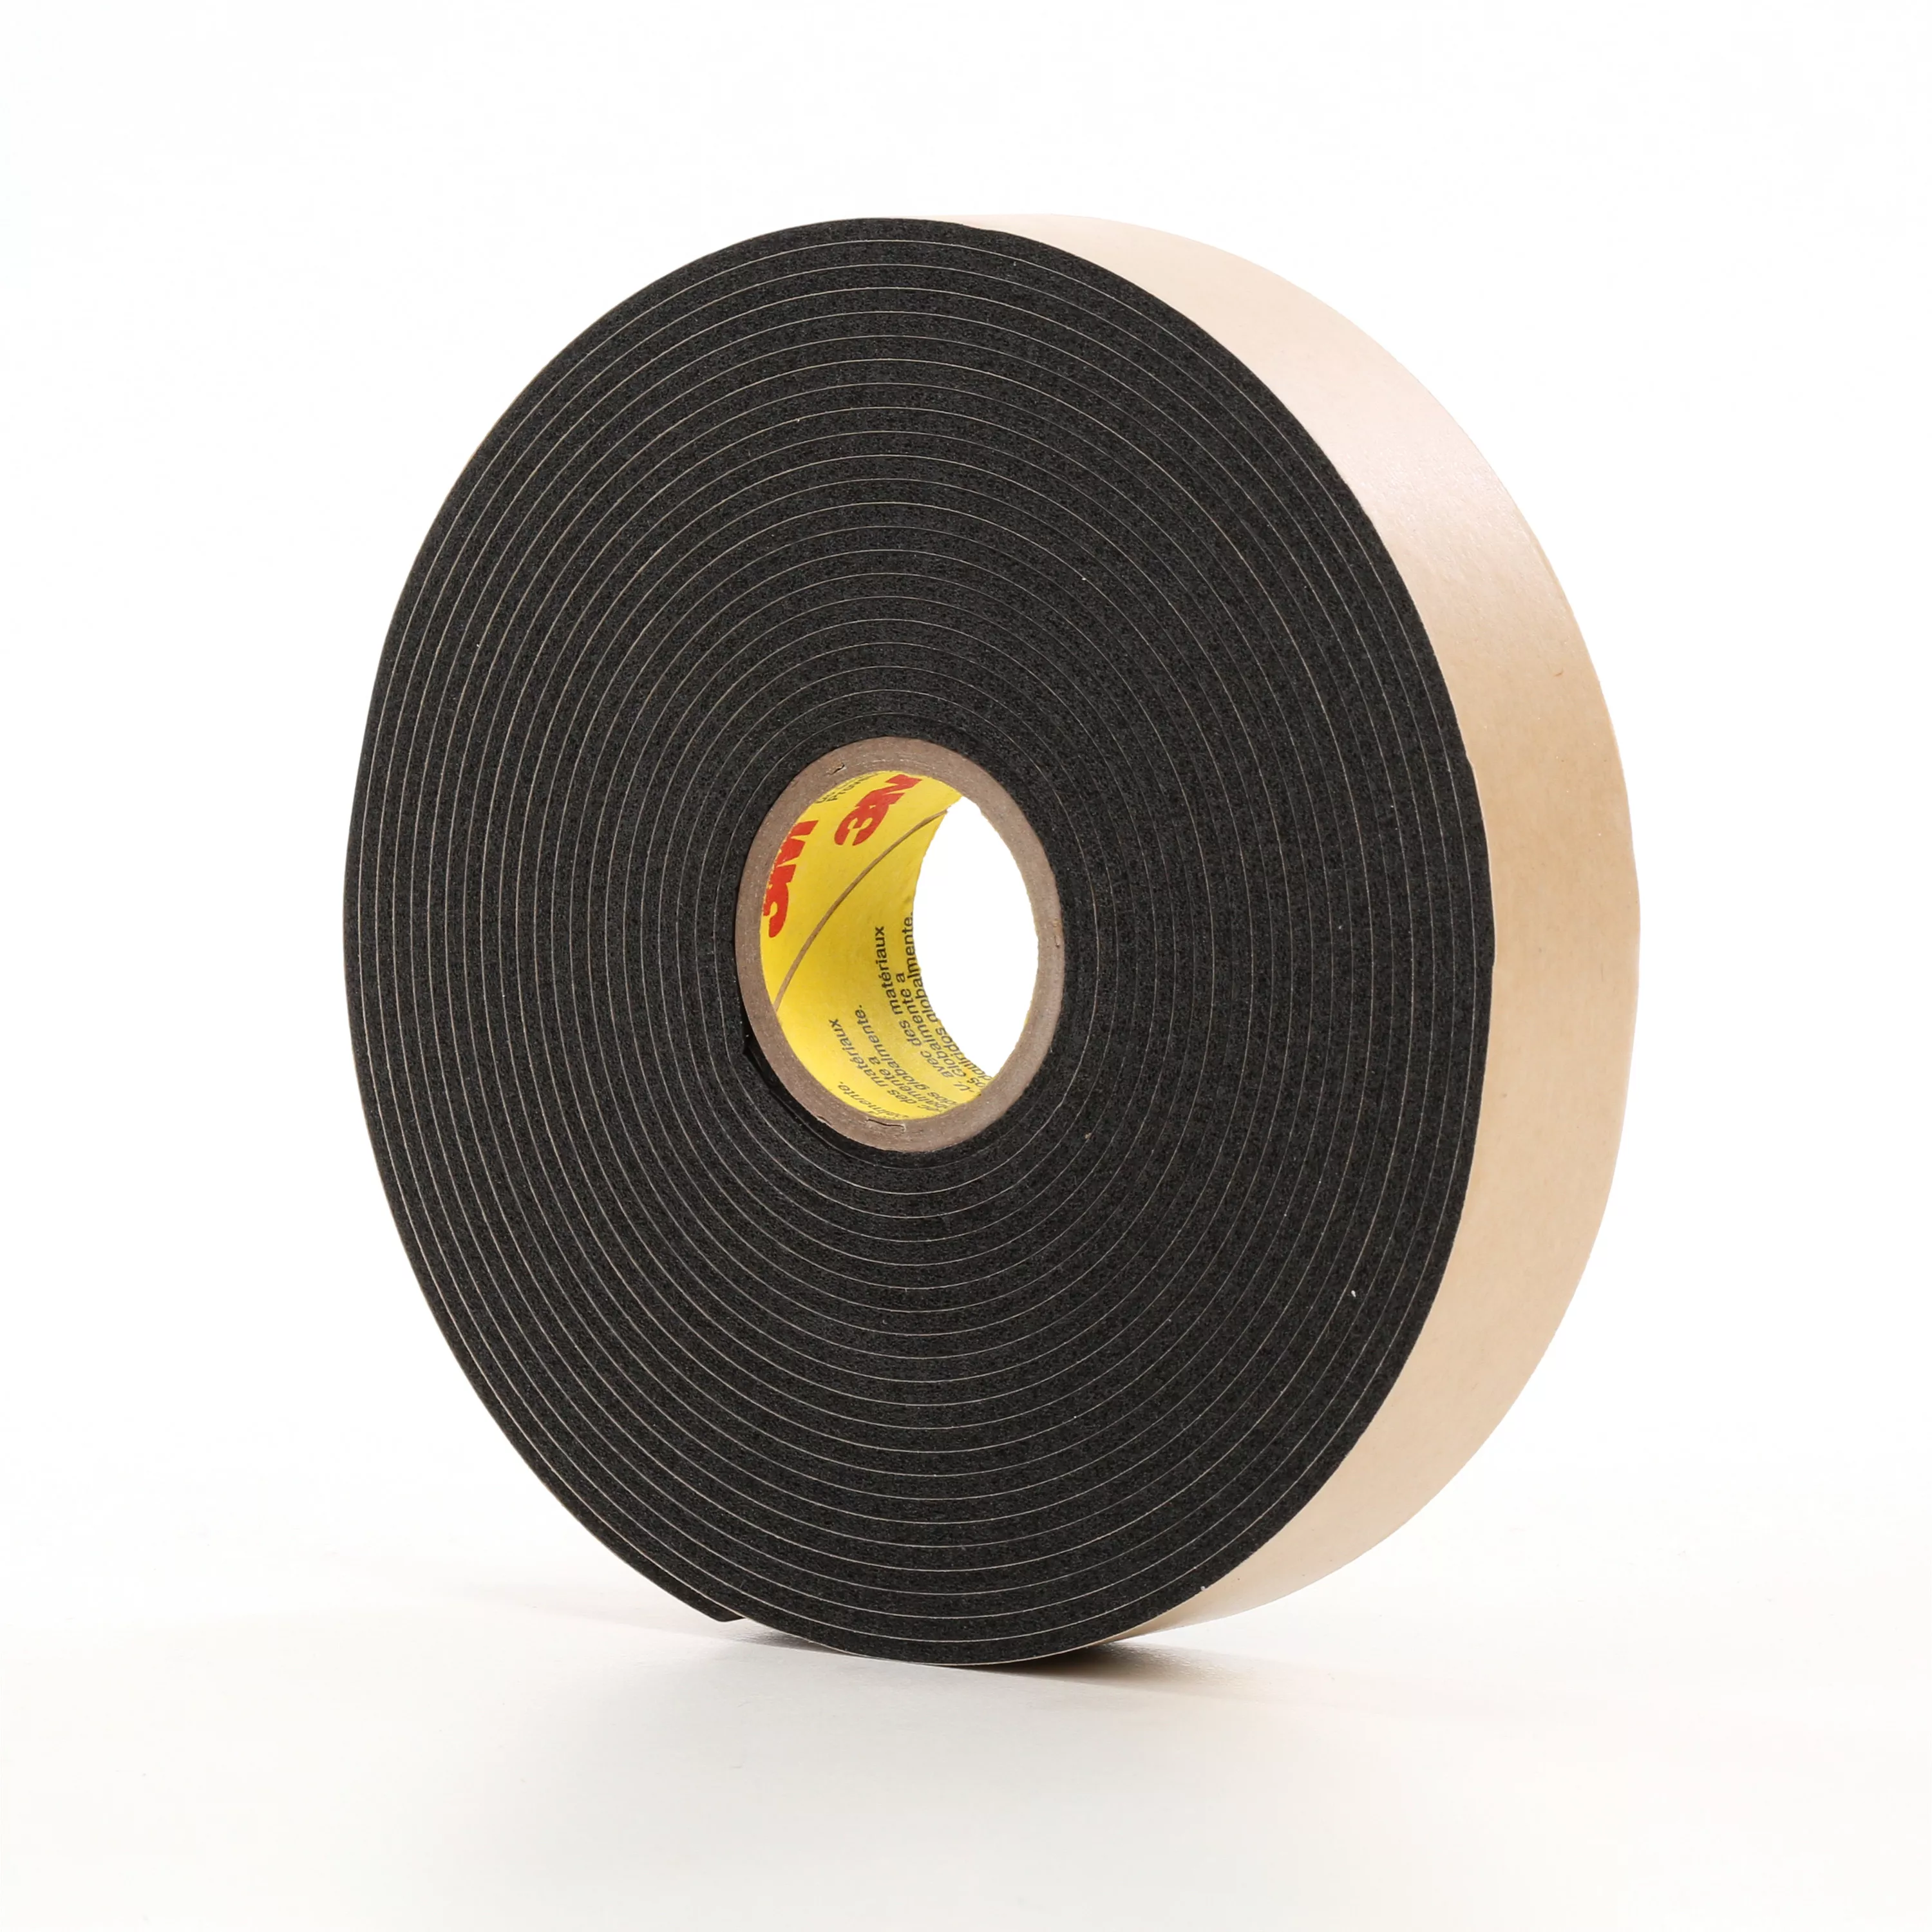 3M™ Double Coated Polyethylene Foam Tape 4496B, Black, 2 in x 36 yd, 62
mil, 6 Roll/Case